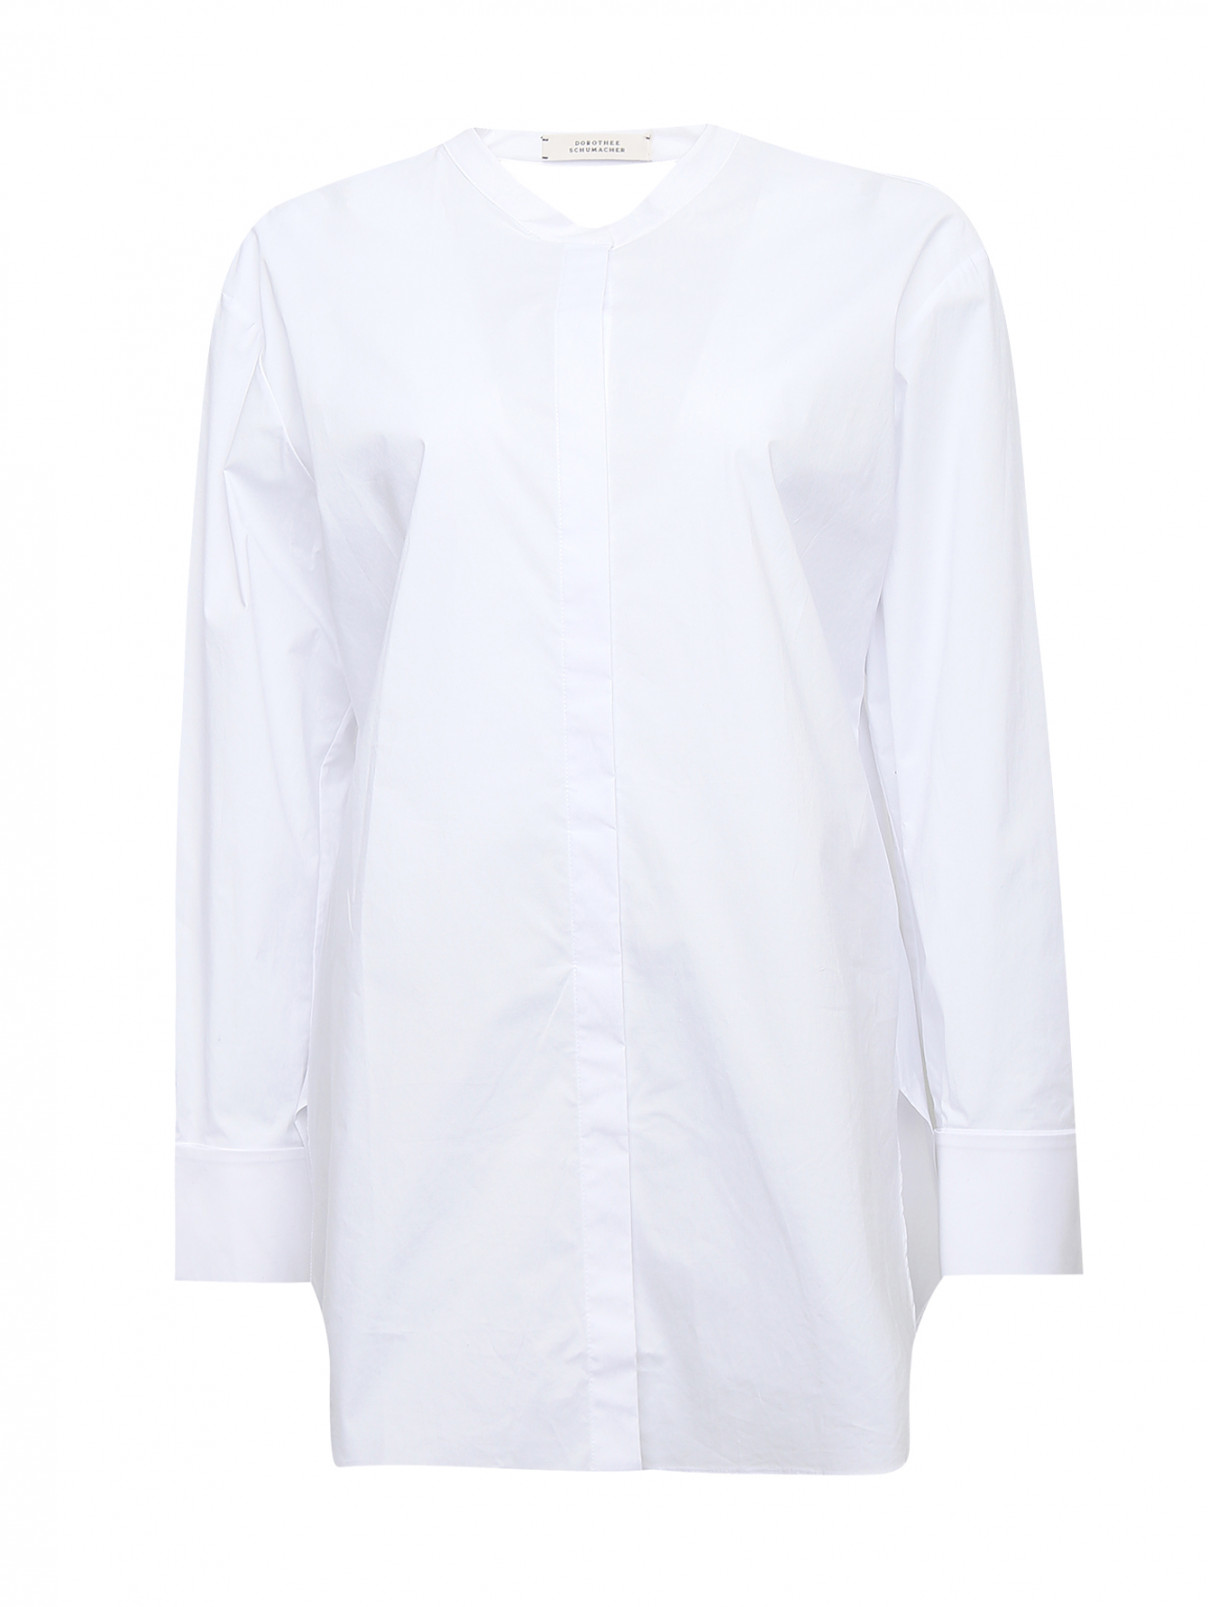 Блуза из хлопка с вырезом на спине Dorothee Schumacher  –  Общий вид  – Цвет:  Белый